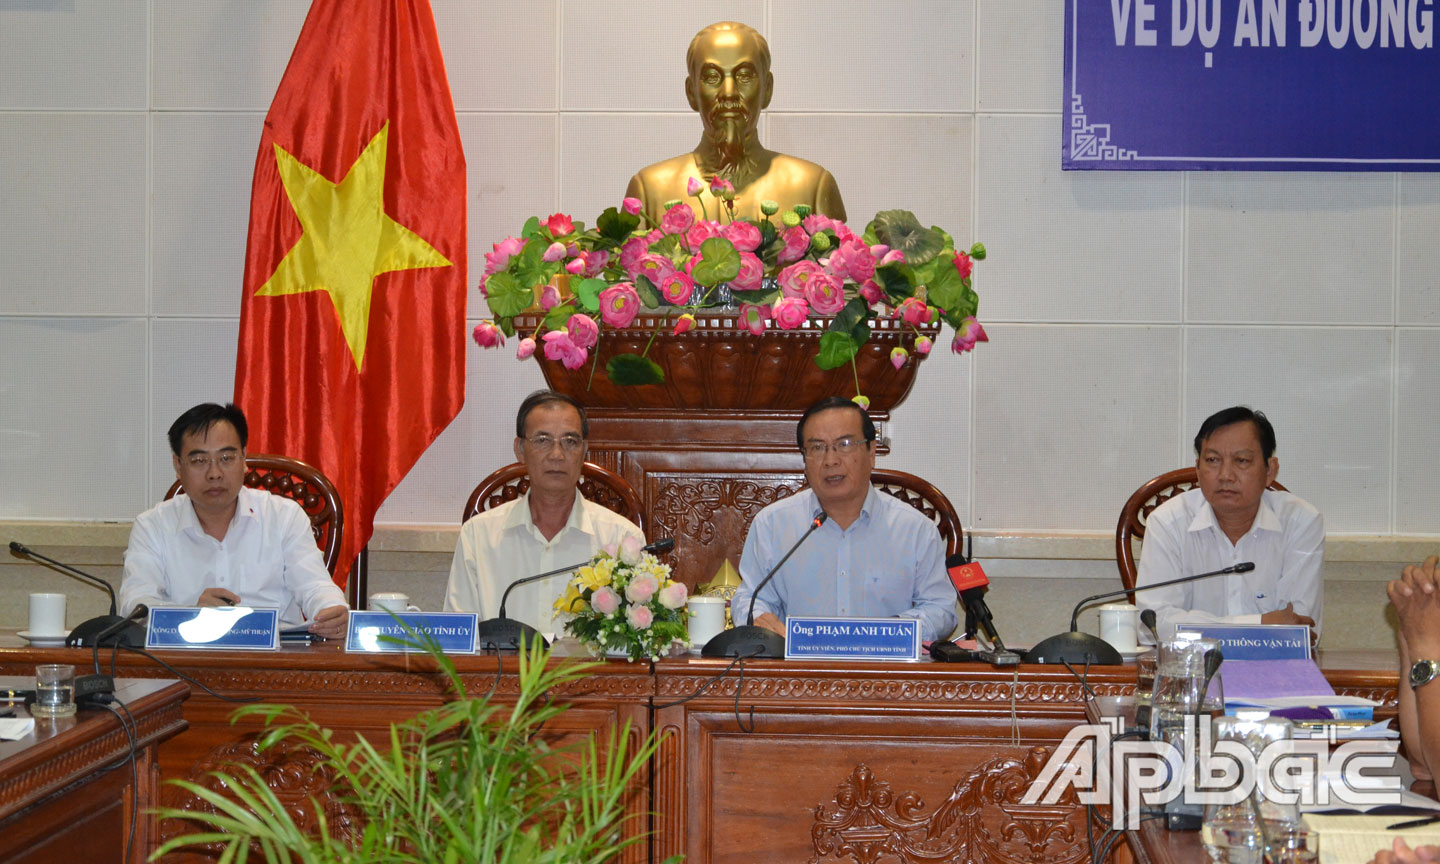 Phó Chủ tịch UBND tỉnh Phạm Anh Tuấn phát biểu tại buổi họp báo.